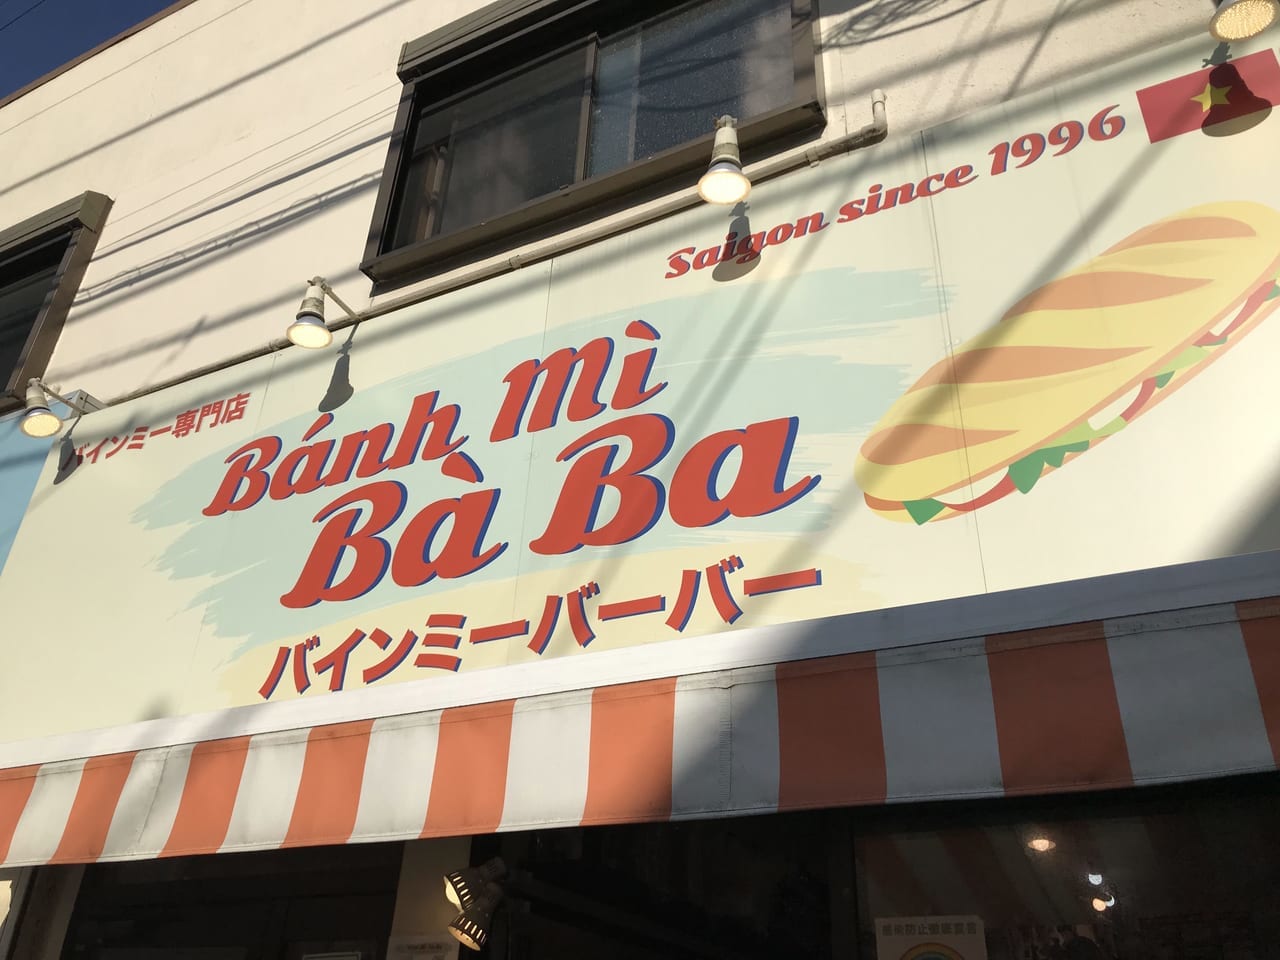 世田谷区Bánh mì Bà Ba（バインミーバーバー）下北沢店は2021年6月9日に3周年を迎えます。